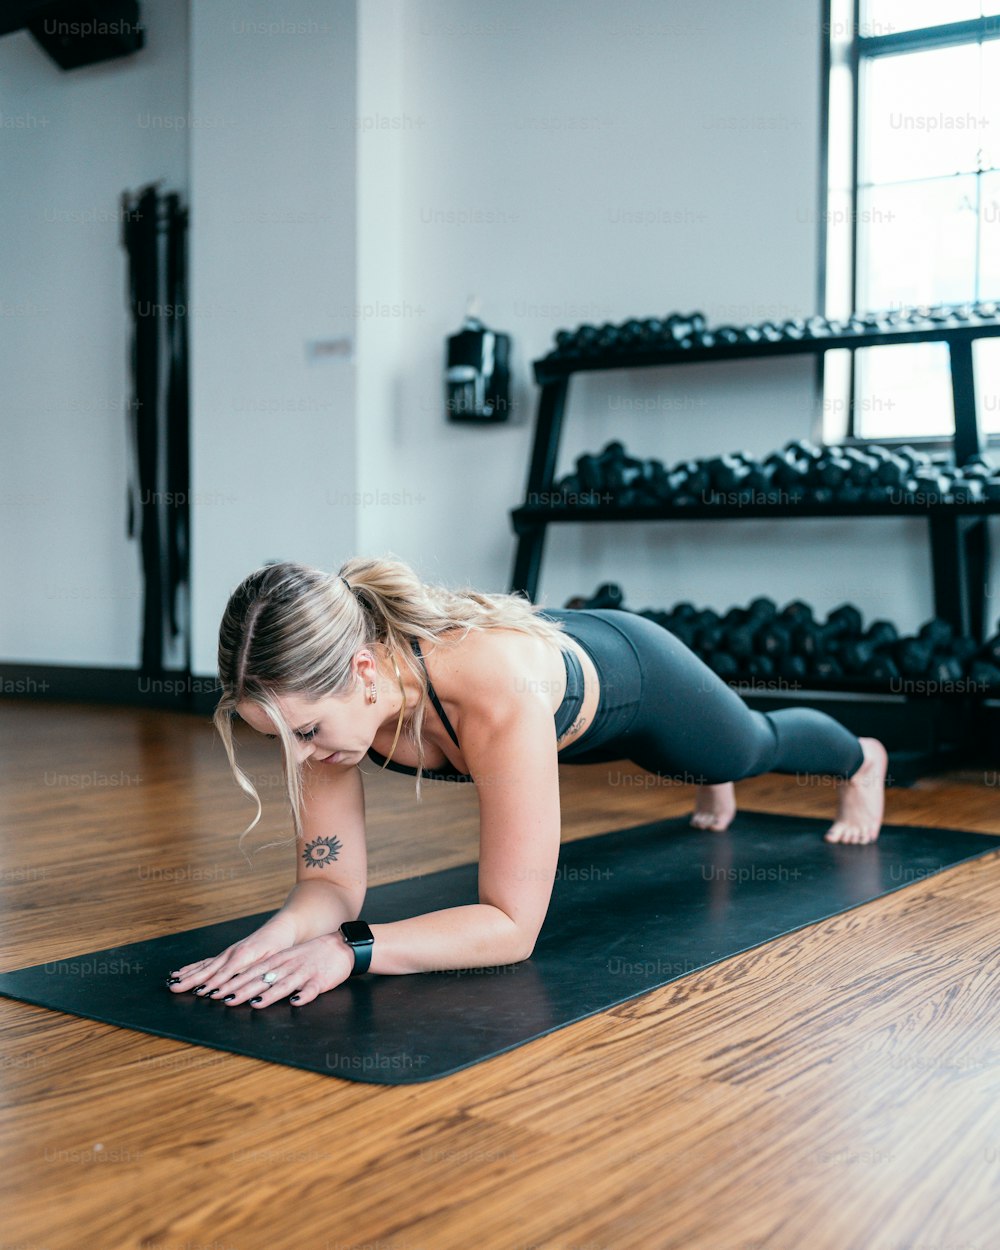 Una mujer está haciendo una flexión en una esterilla de yoga